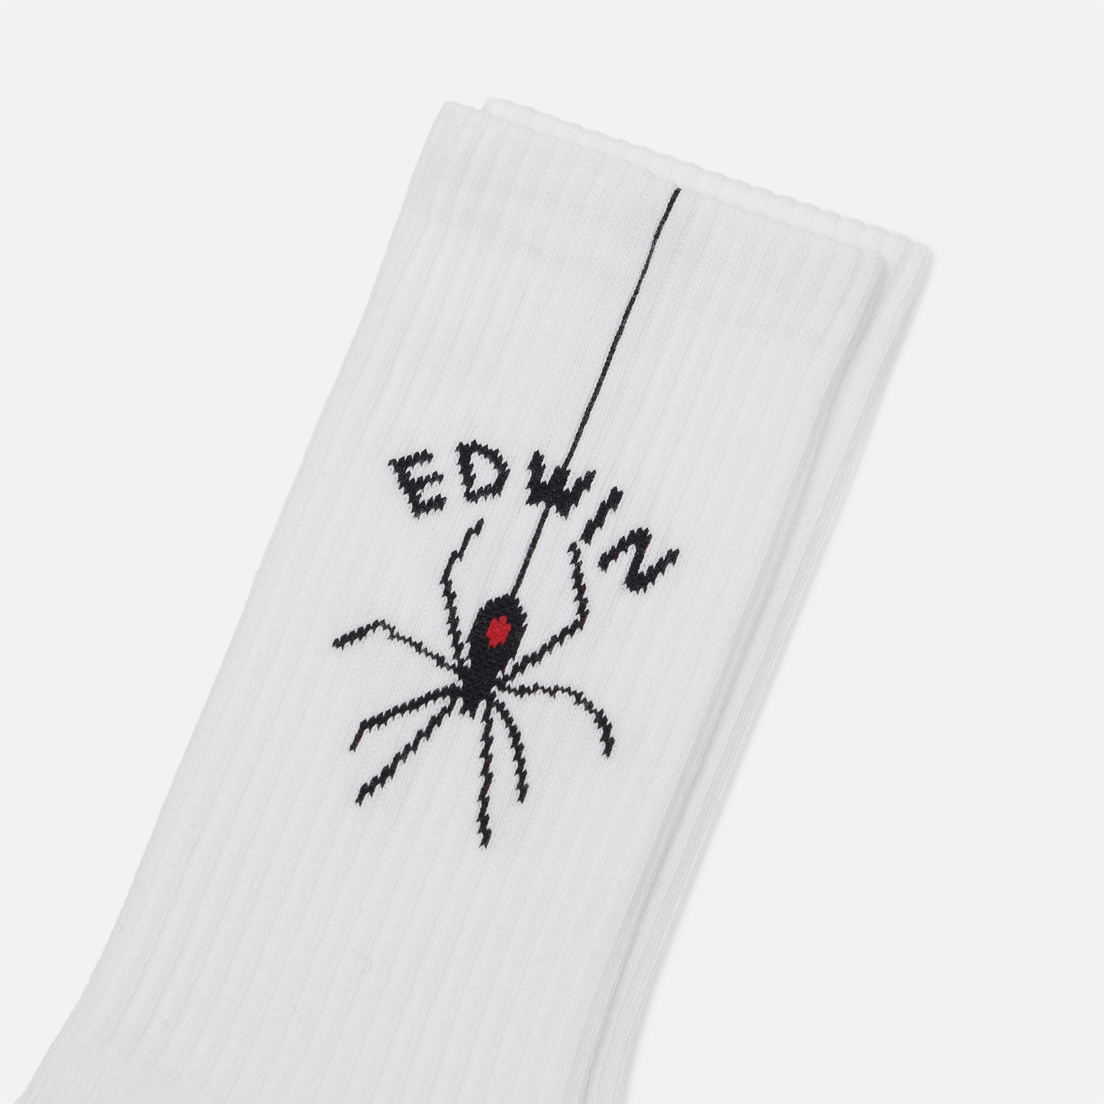 Edwin Носки Spider